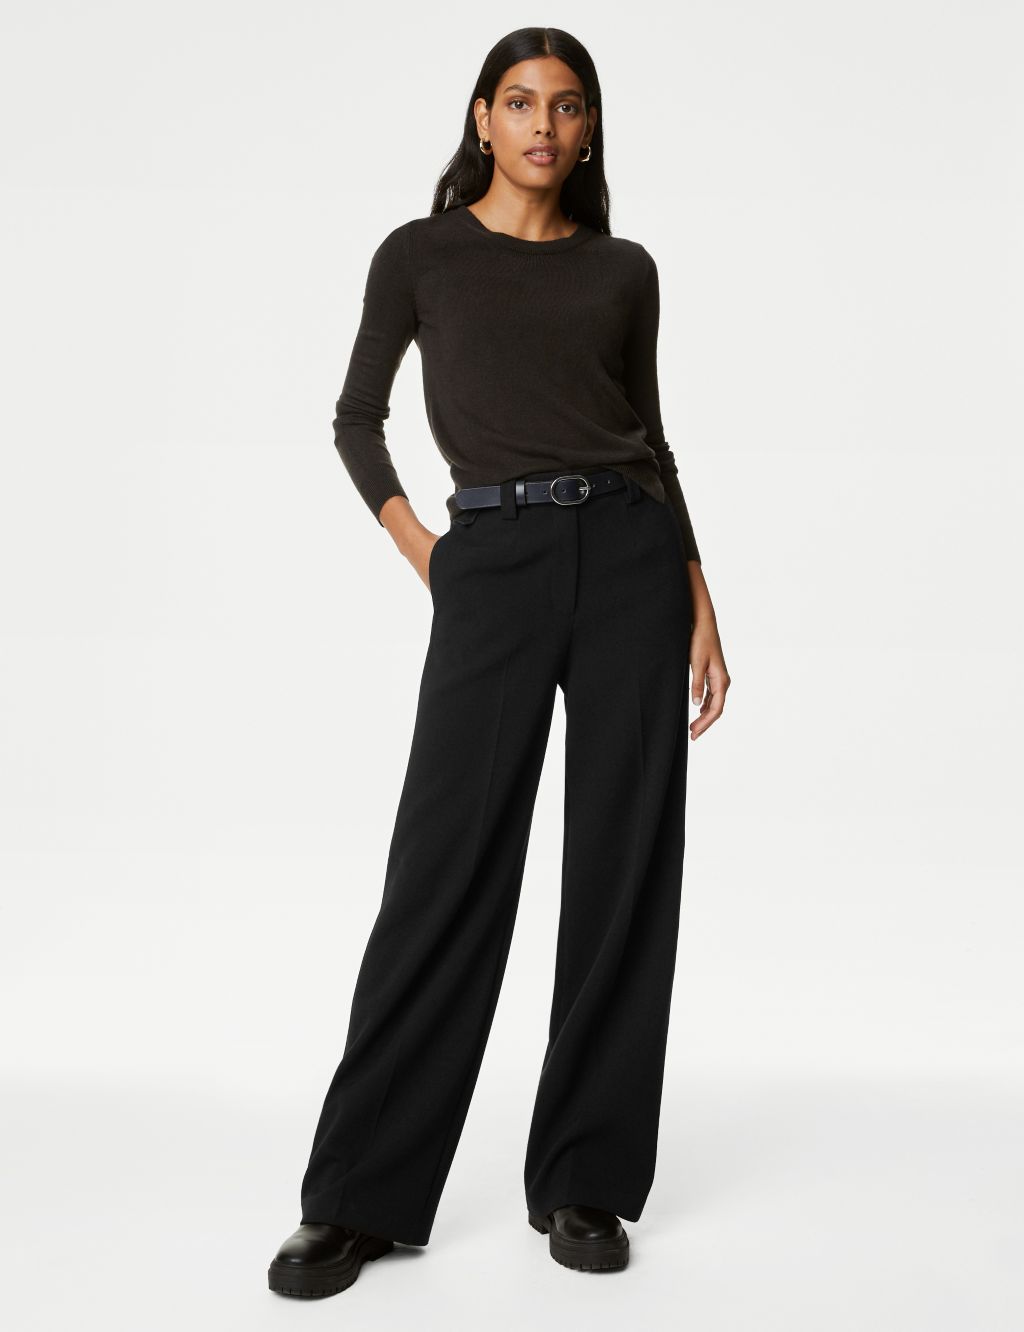 zuwimk Pants For Women Trendy,Women's Pull on Dress Pant Average Length  Black,M